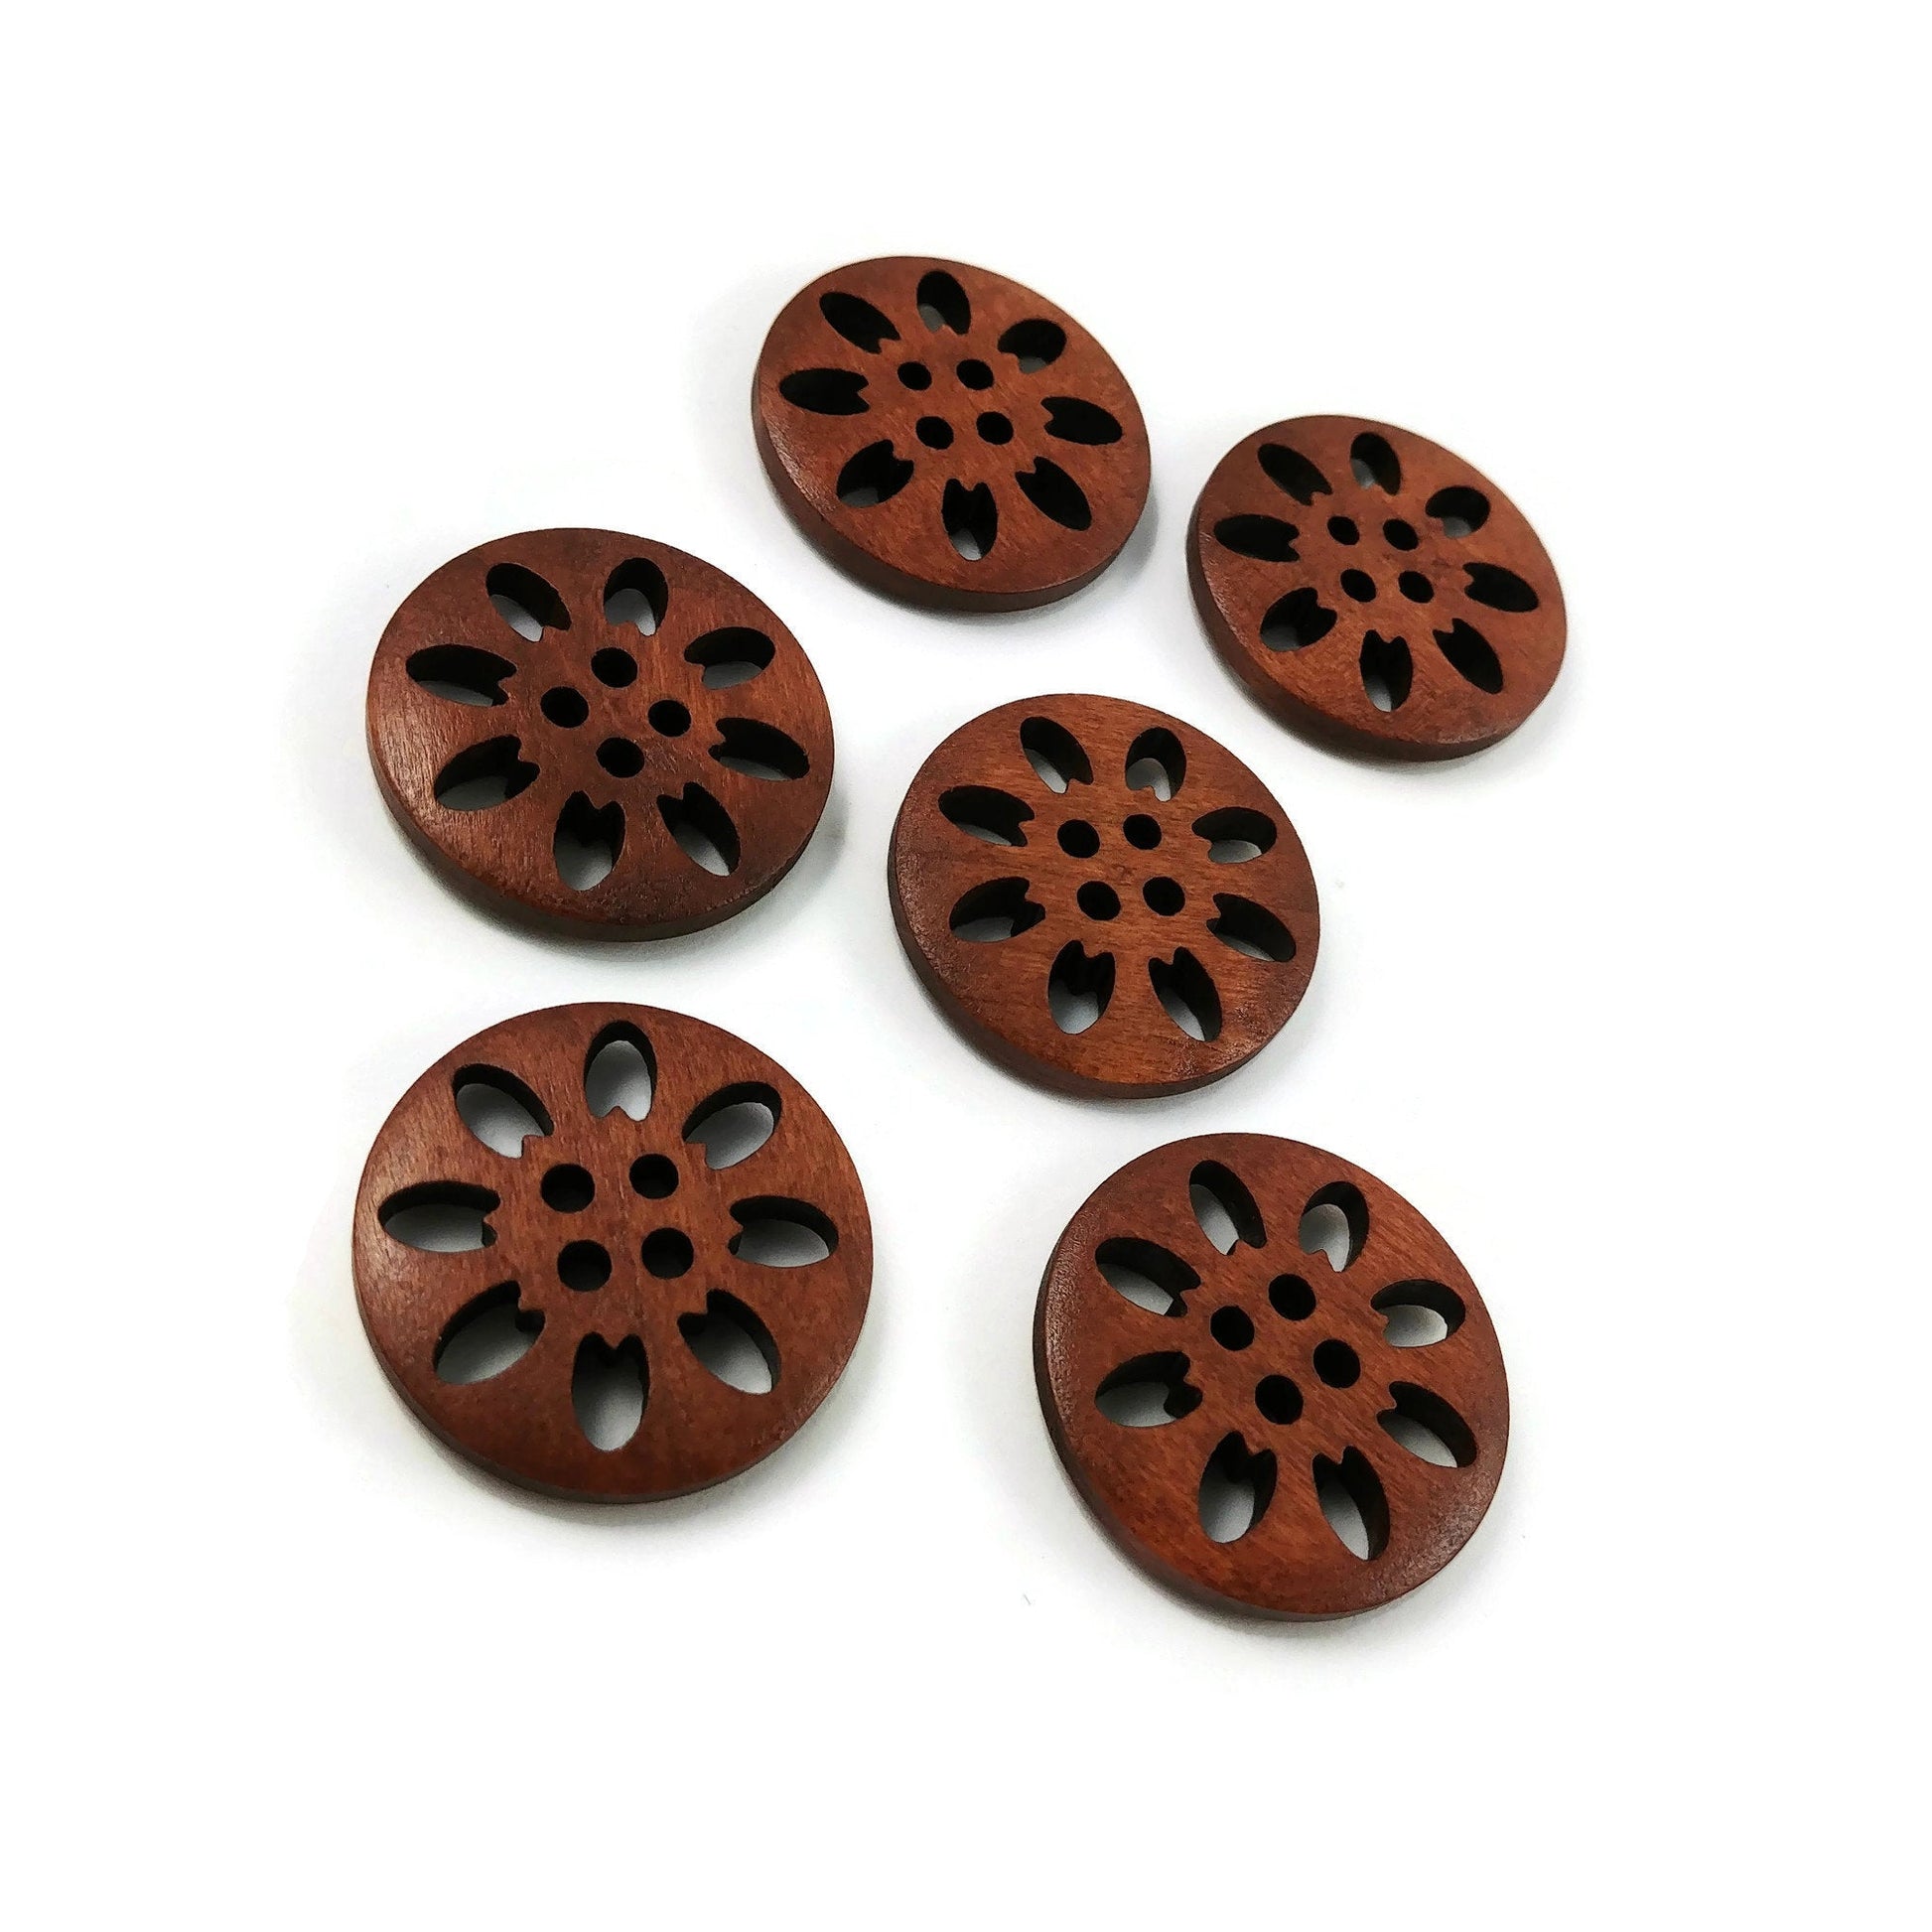 6 boutons de bois fleur dentelle 25mm